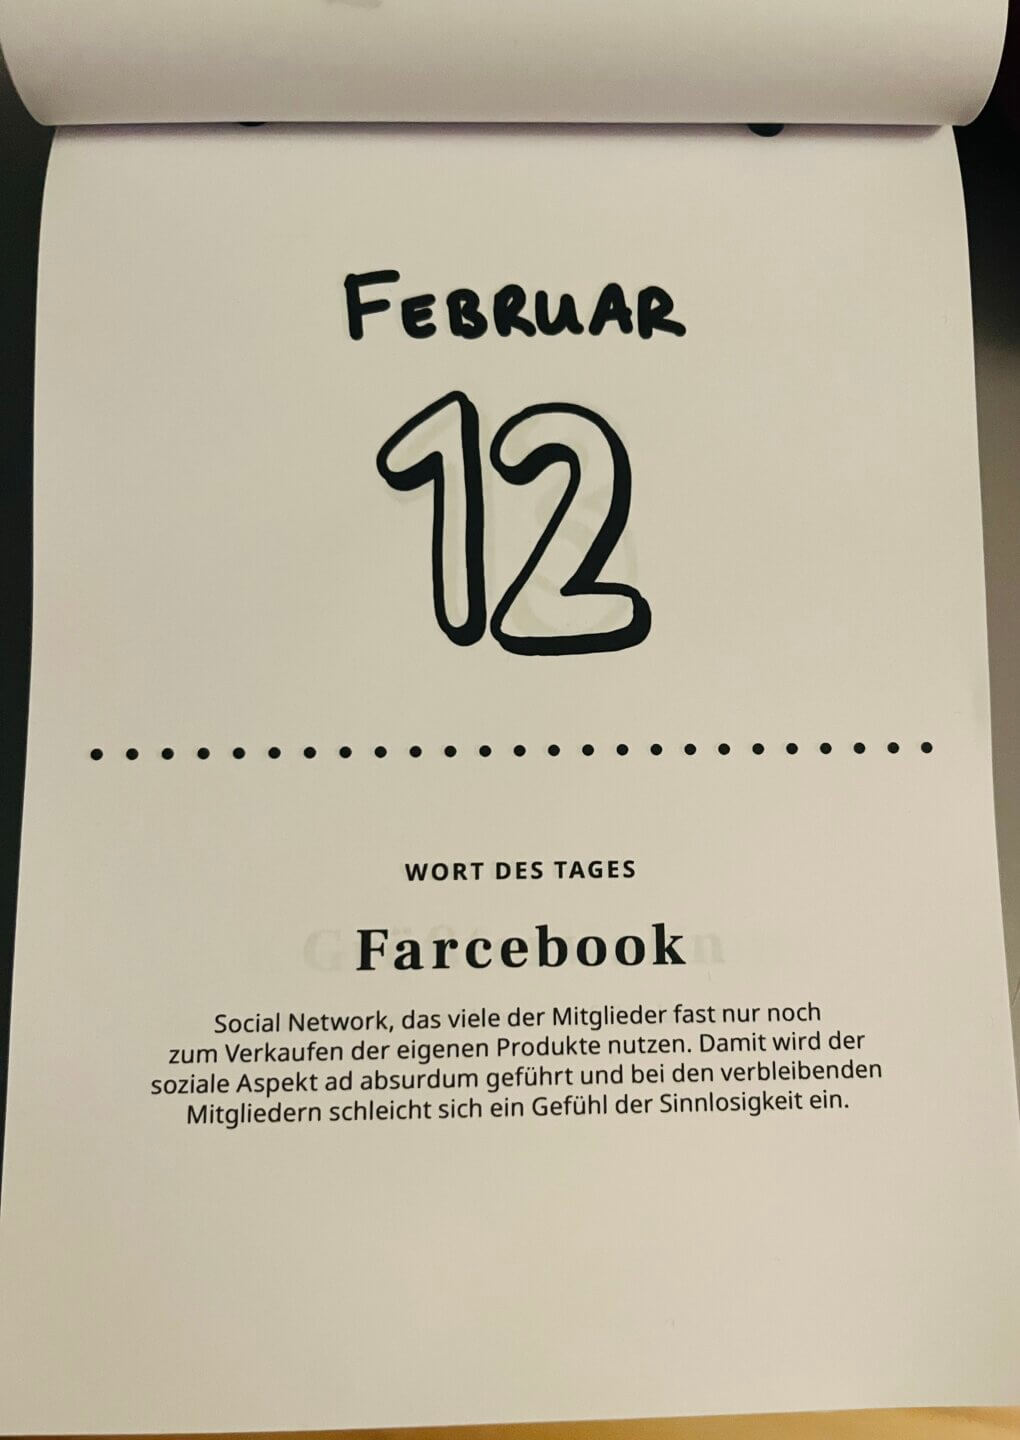 Das Foto zeigt ein Kalenderblatt vom 12. Februar